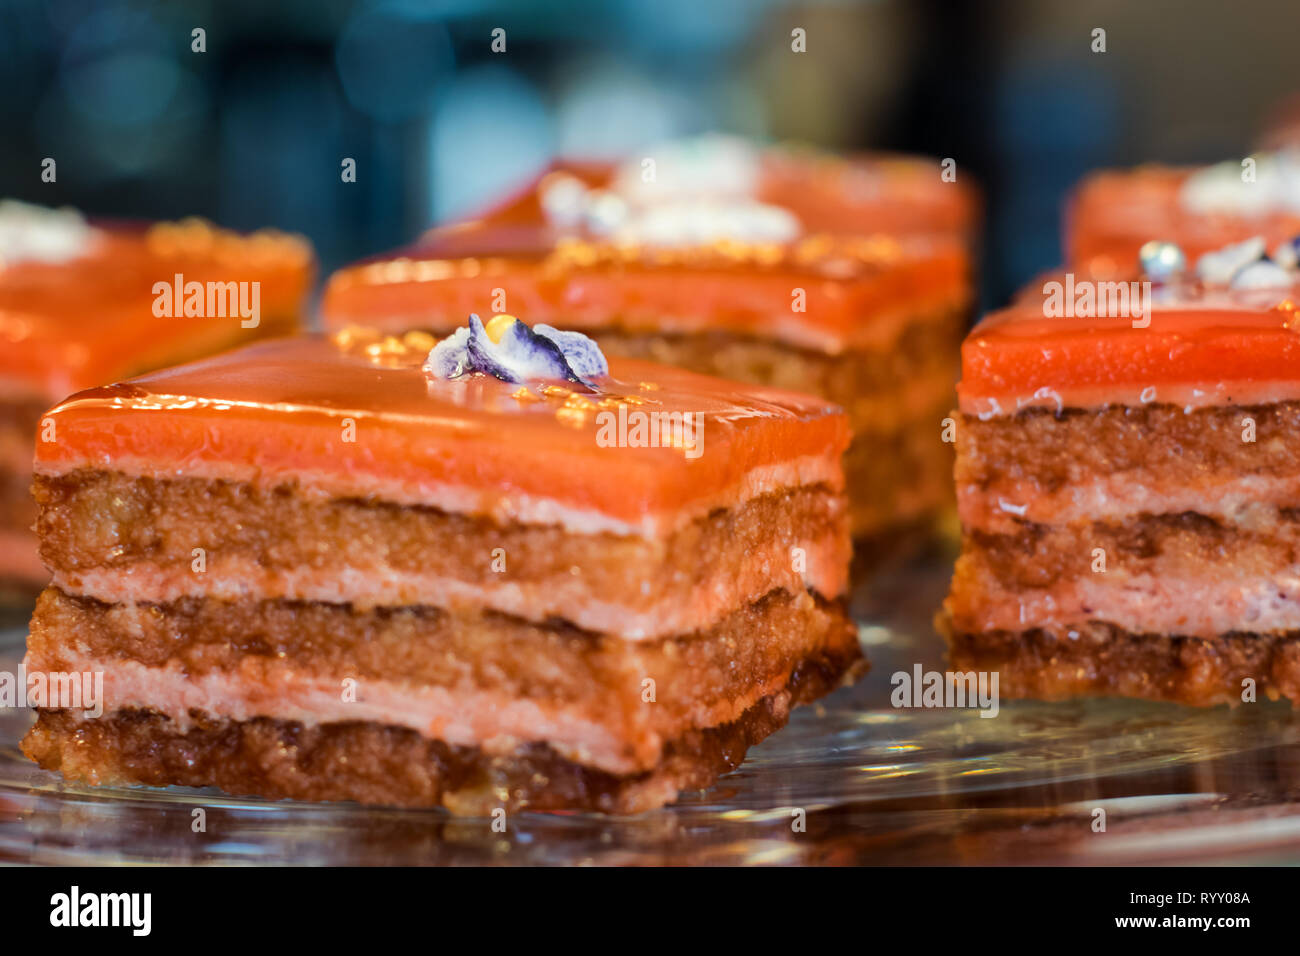 Kuchen, Kuchenstücke als Dessert - Süße Nachspeise Foto Stock